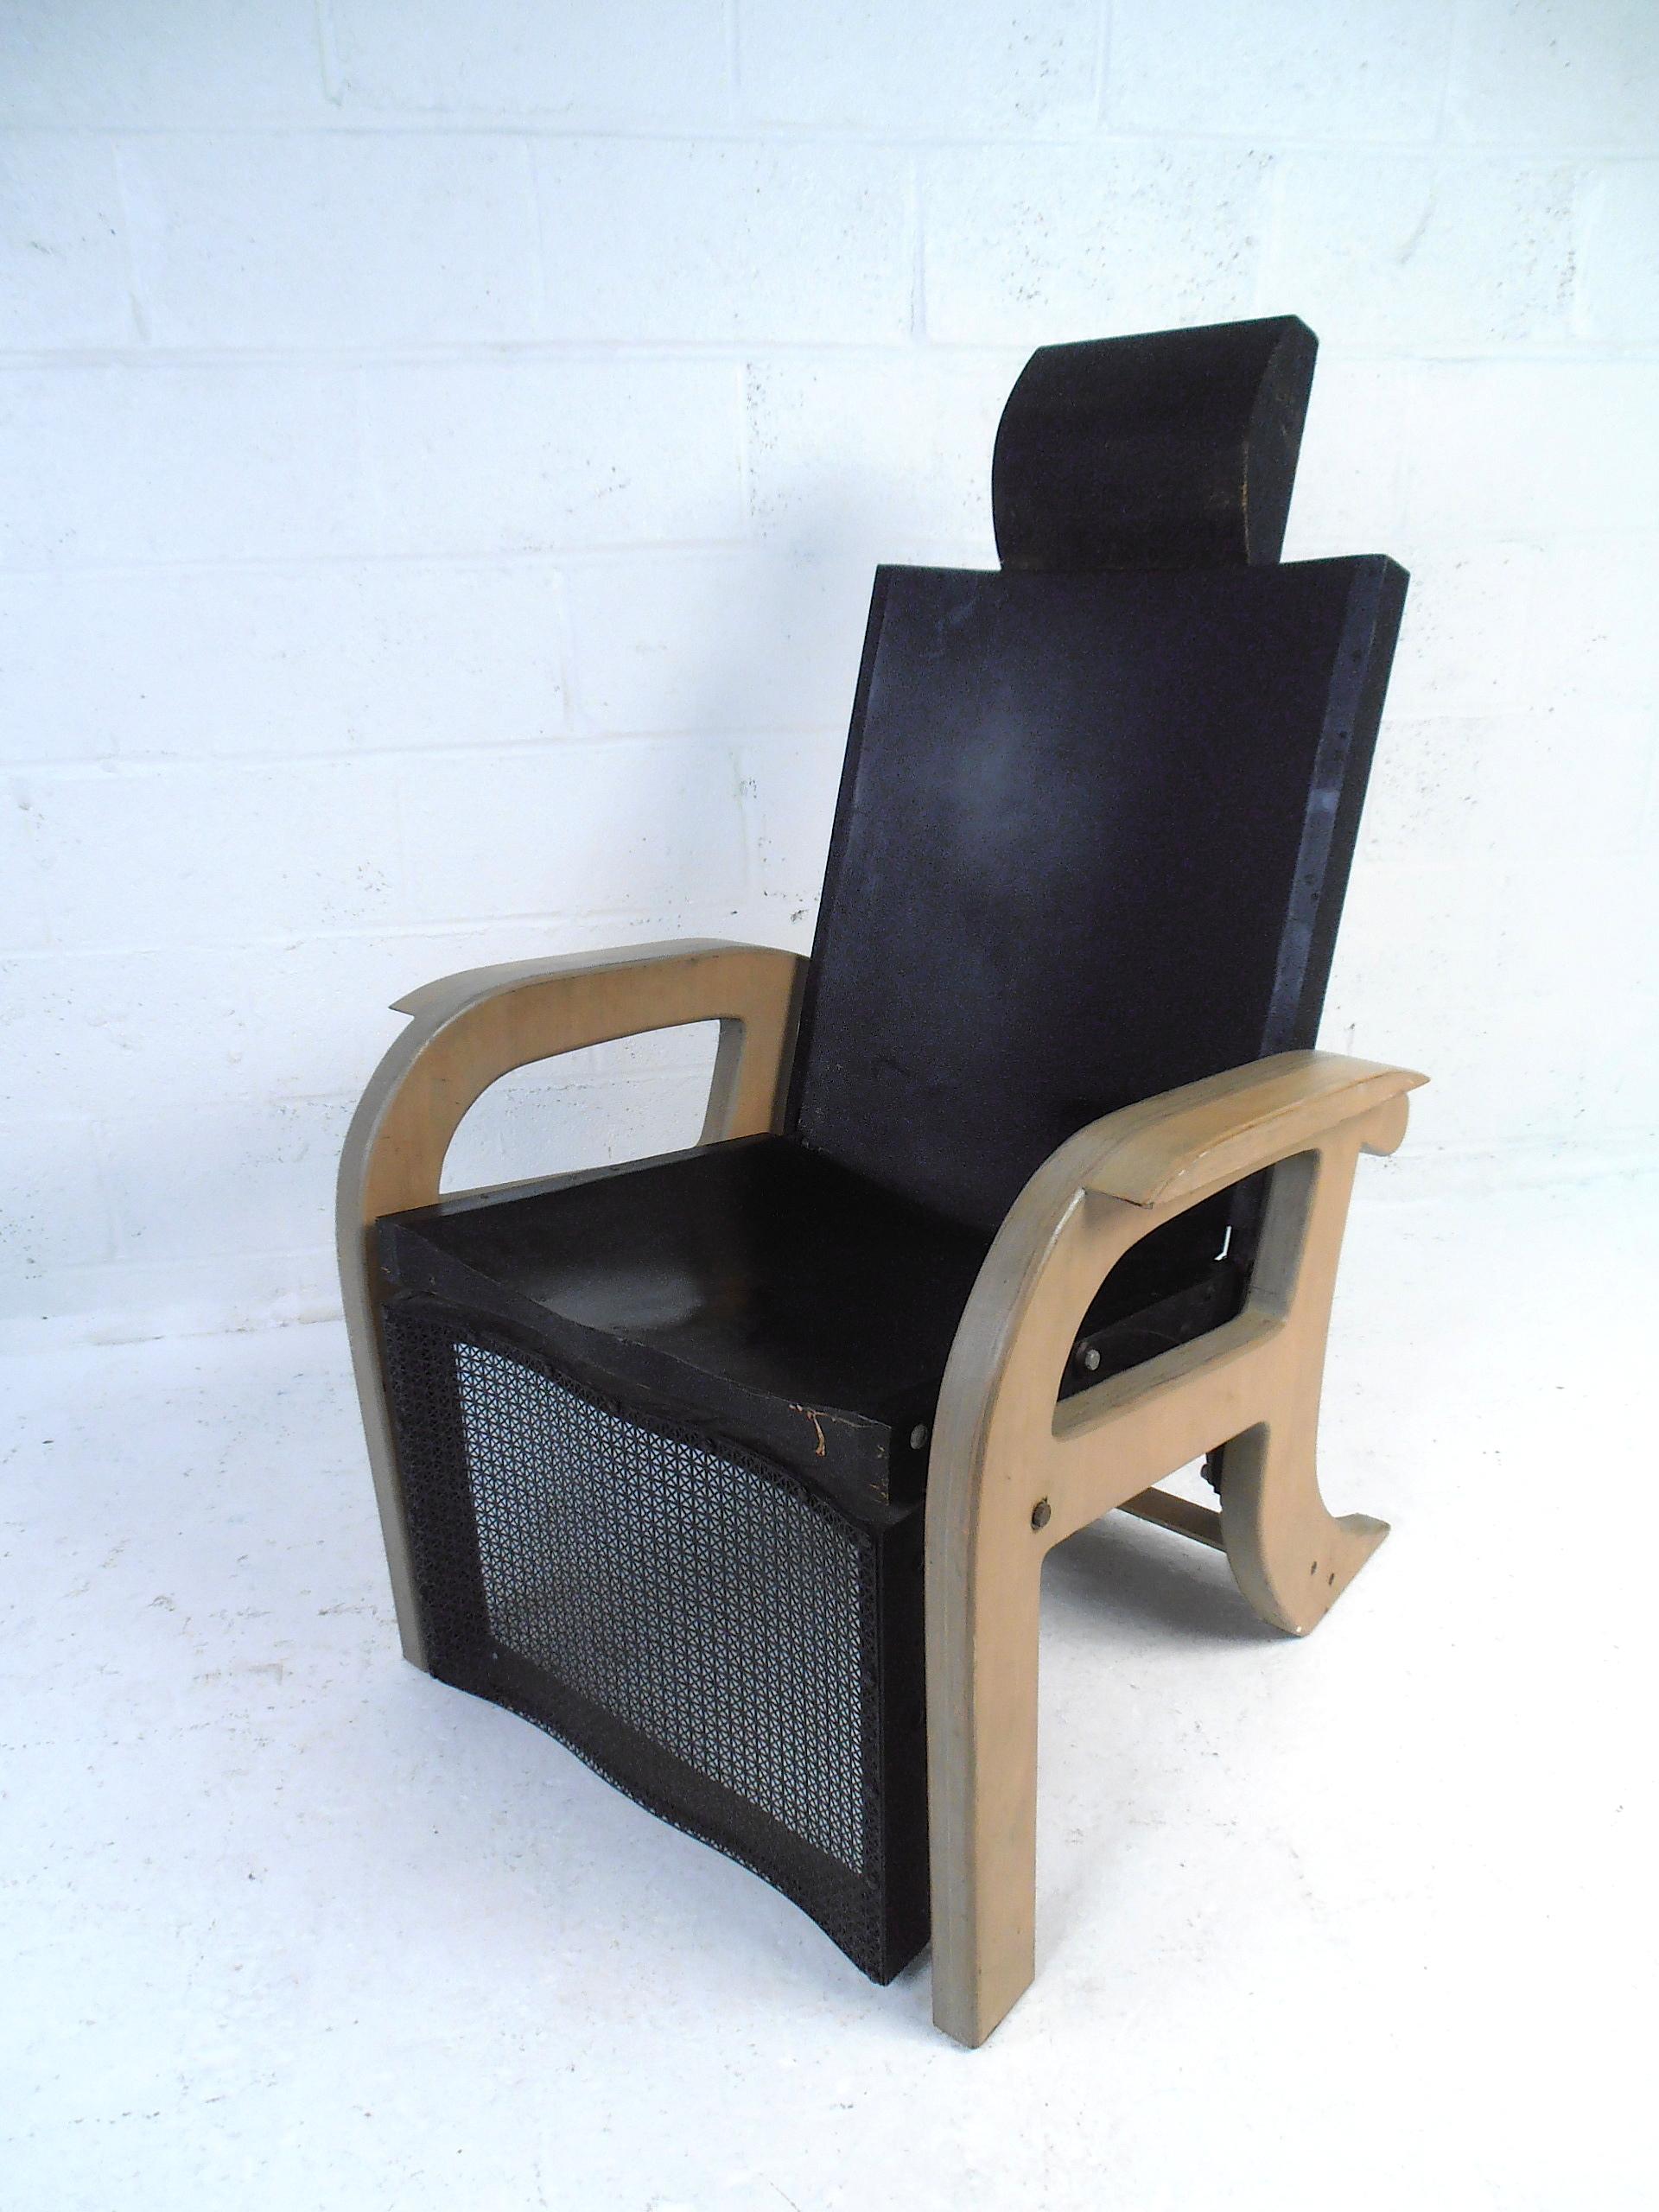 Ce fauteuil inclinable du milieu du siècle présente des lignes épurées classiques et un confort moderne. Fabriqué à partir de matériaux classiques et d'une construction solide, ce meuble ajoutera une touche d'originalité à tout espace où il se